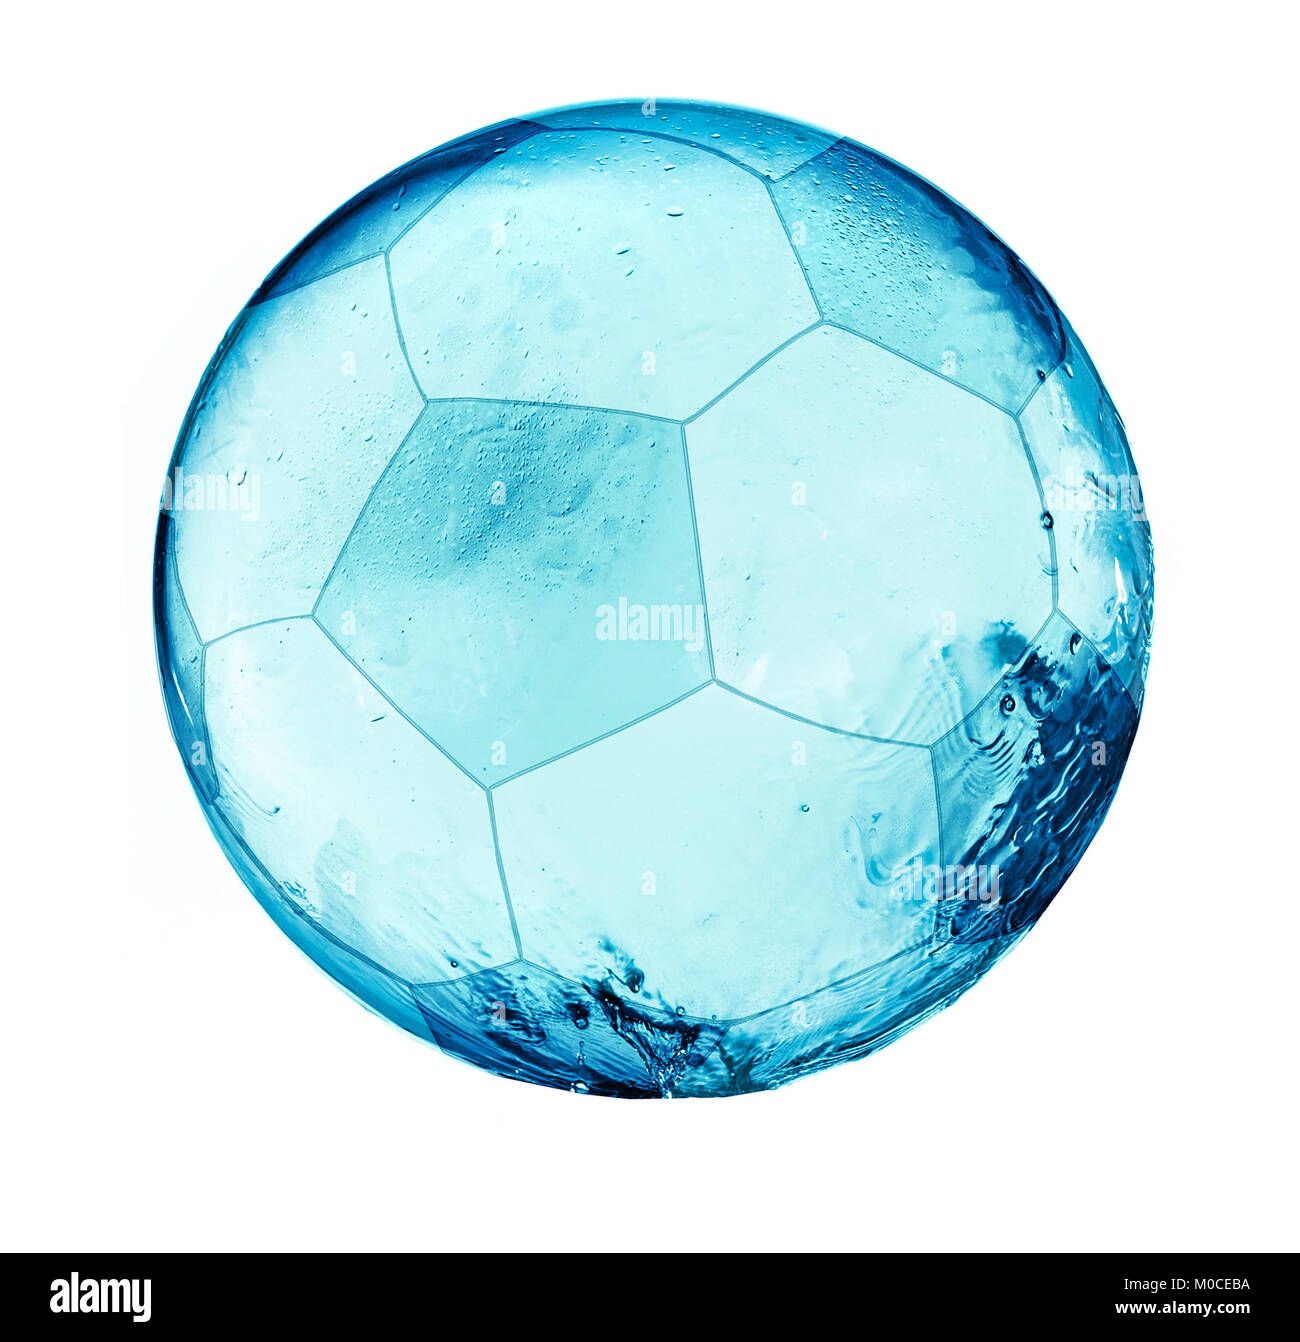 Résumé ballon de soccer de l'eau splash isolé sur fond blanc. Football concept abstrait. Banque D'Images